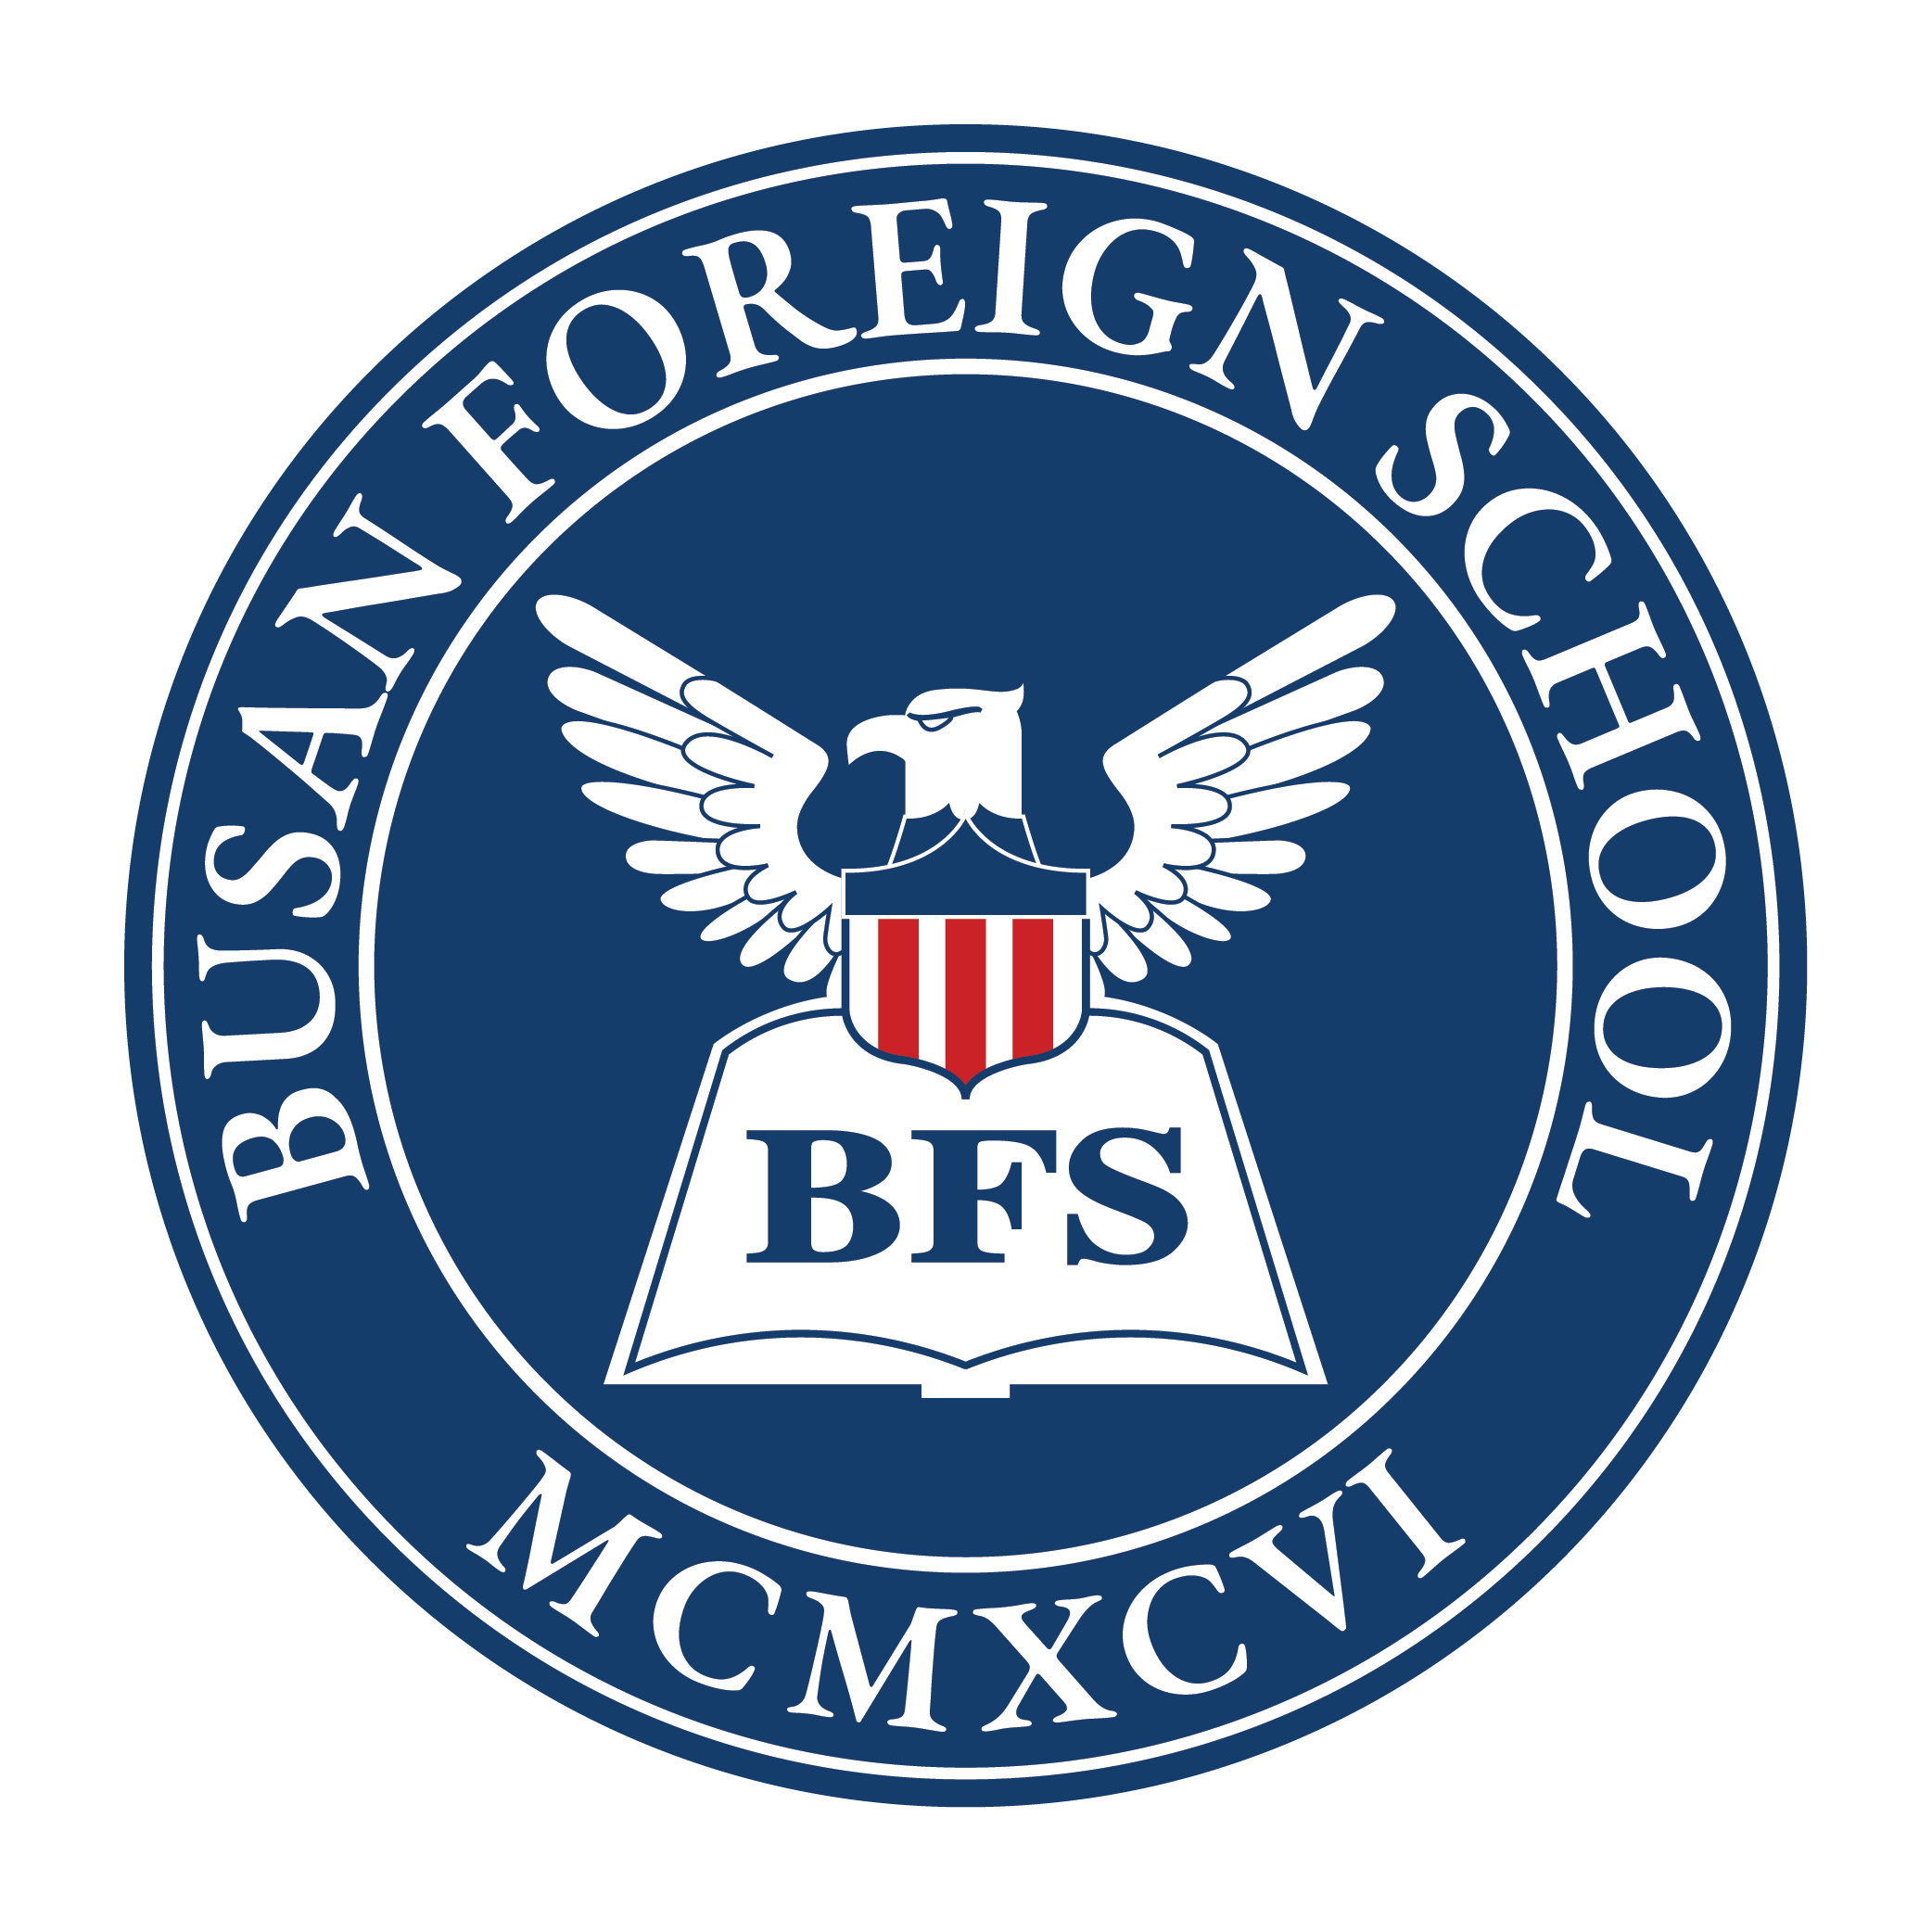 bfs-logo_dark blue red